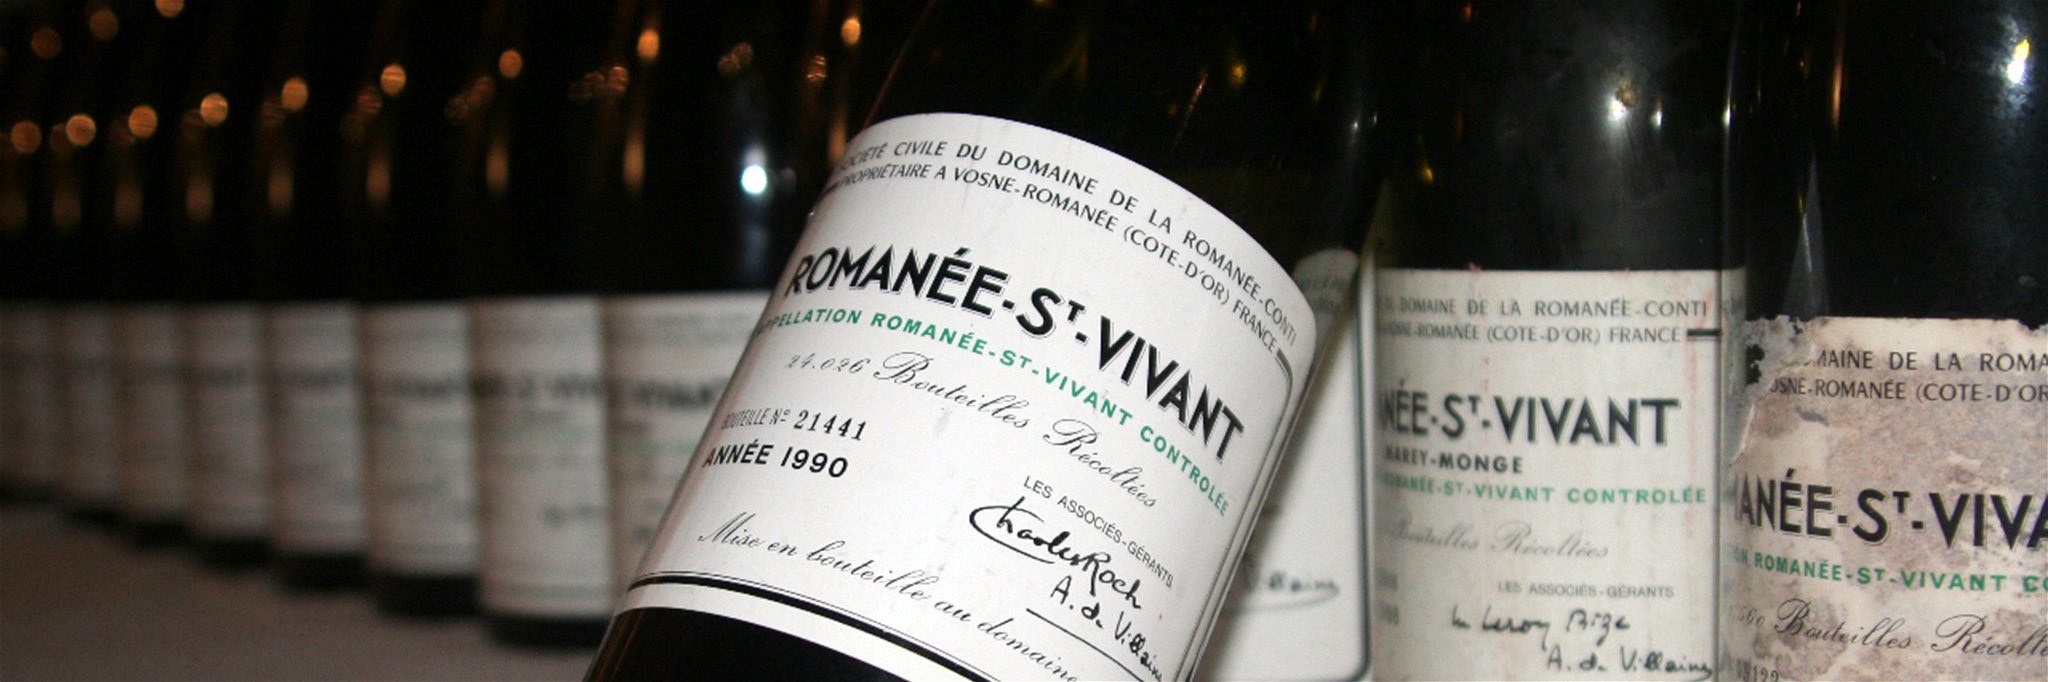 Vor allem bei Sammlern sind die Weine der Domaine de la Romanée-Conti aufgrund ihrer Seltenheit heiß begehrt.